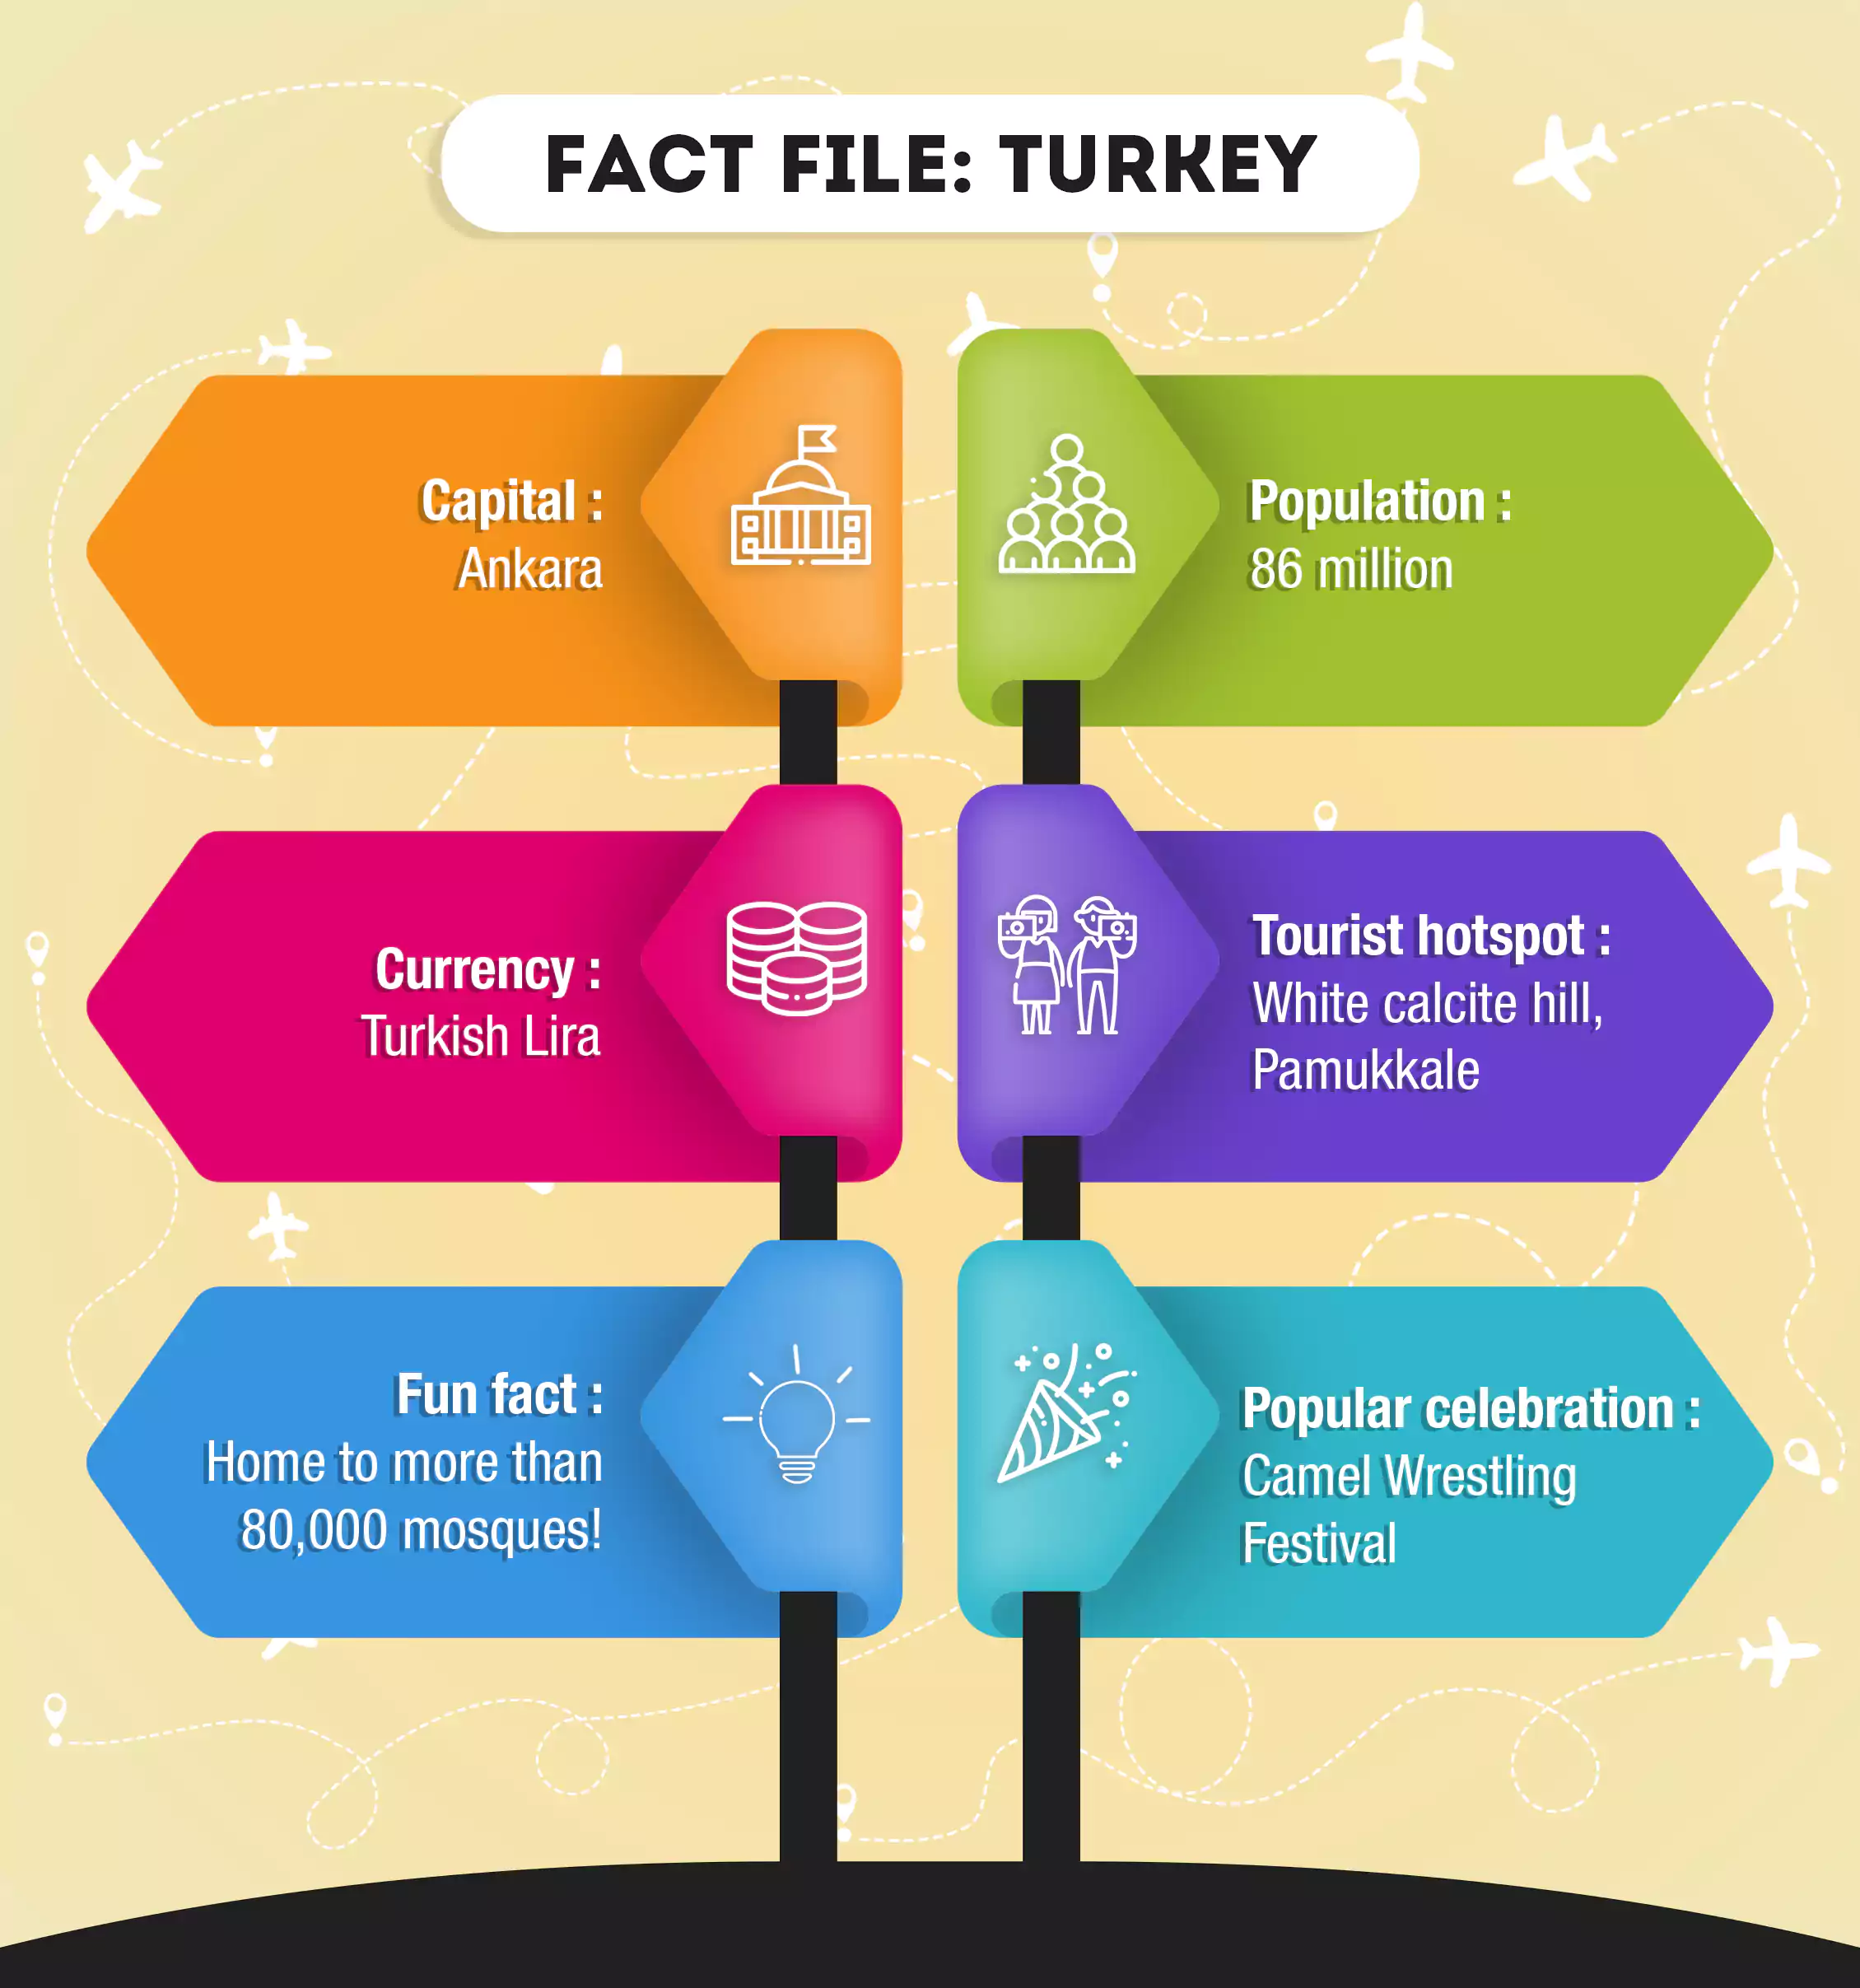 Fact file: Turkey